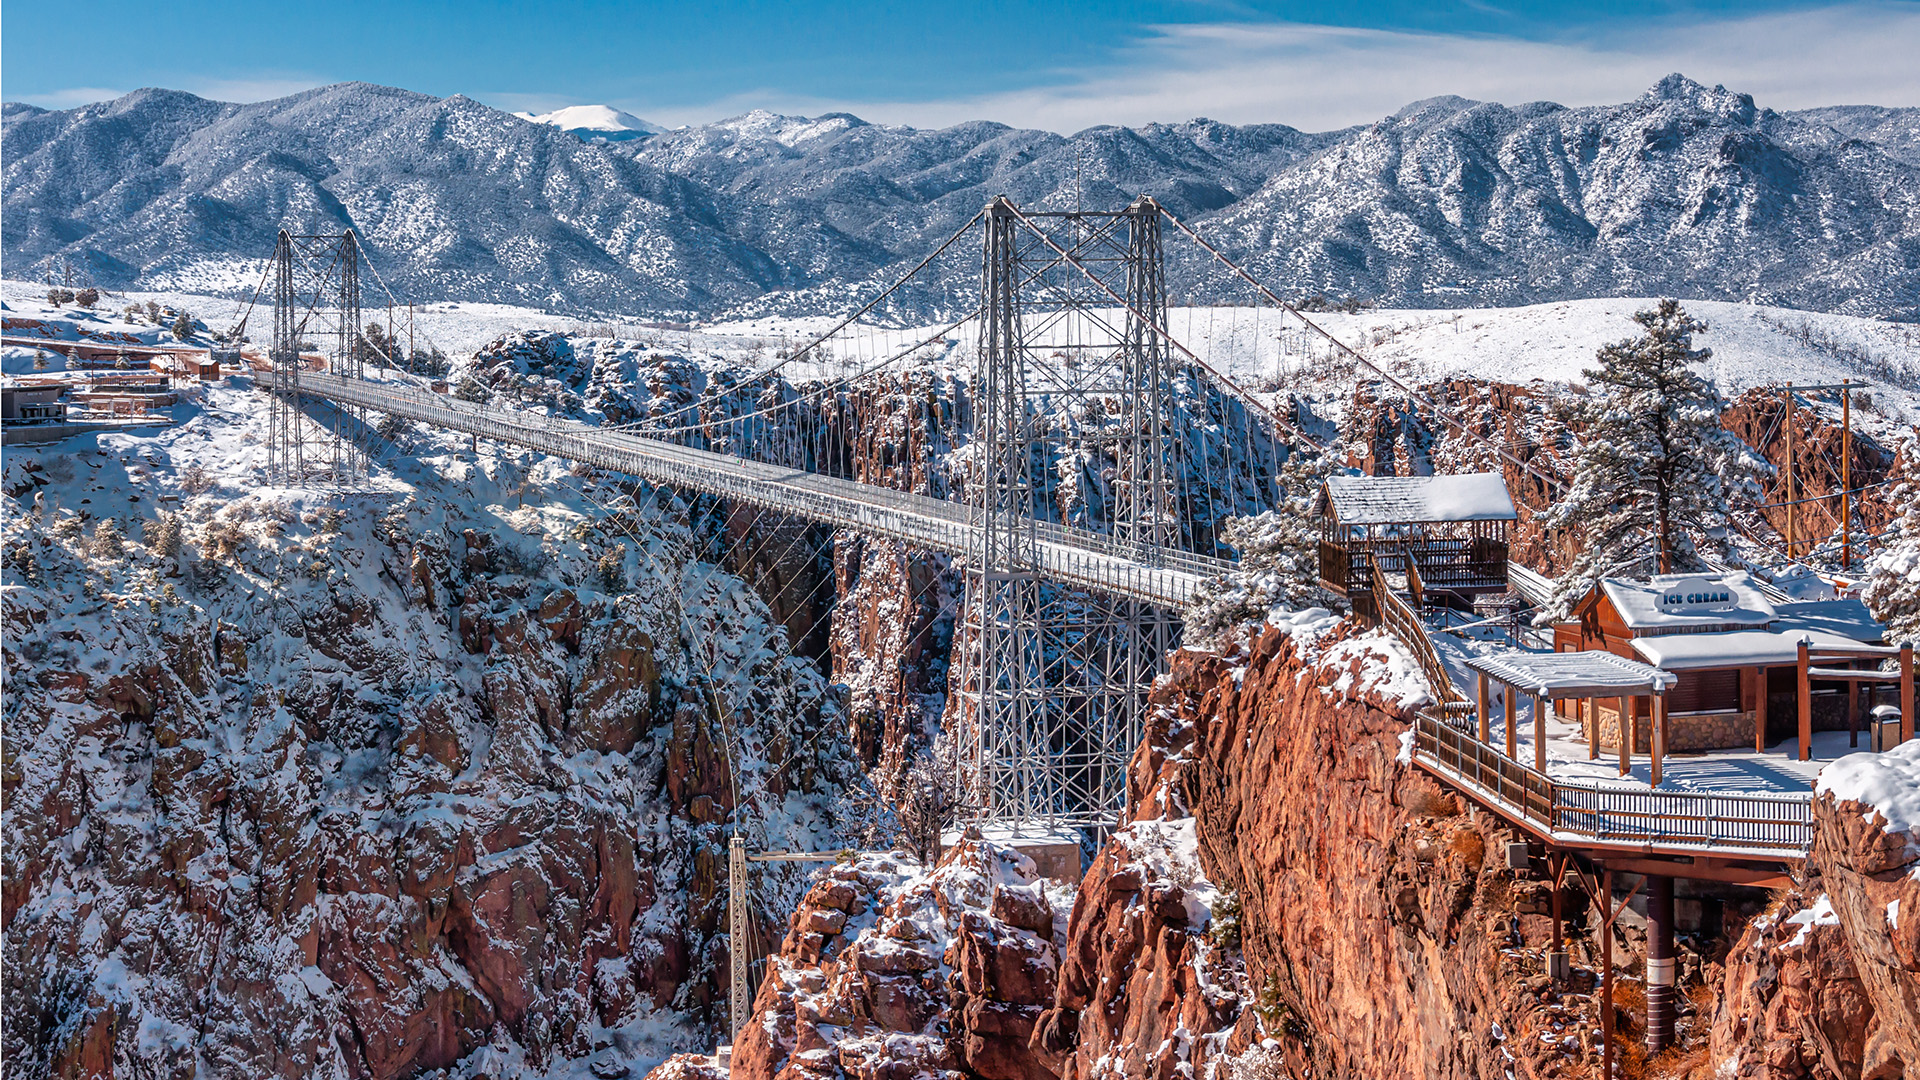 A winter view of the Royal Gorge Bridge near Canon City, Colorado